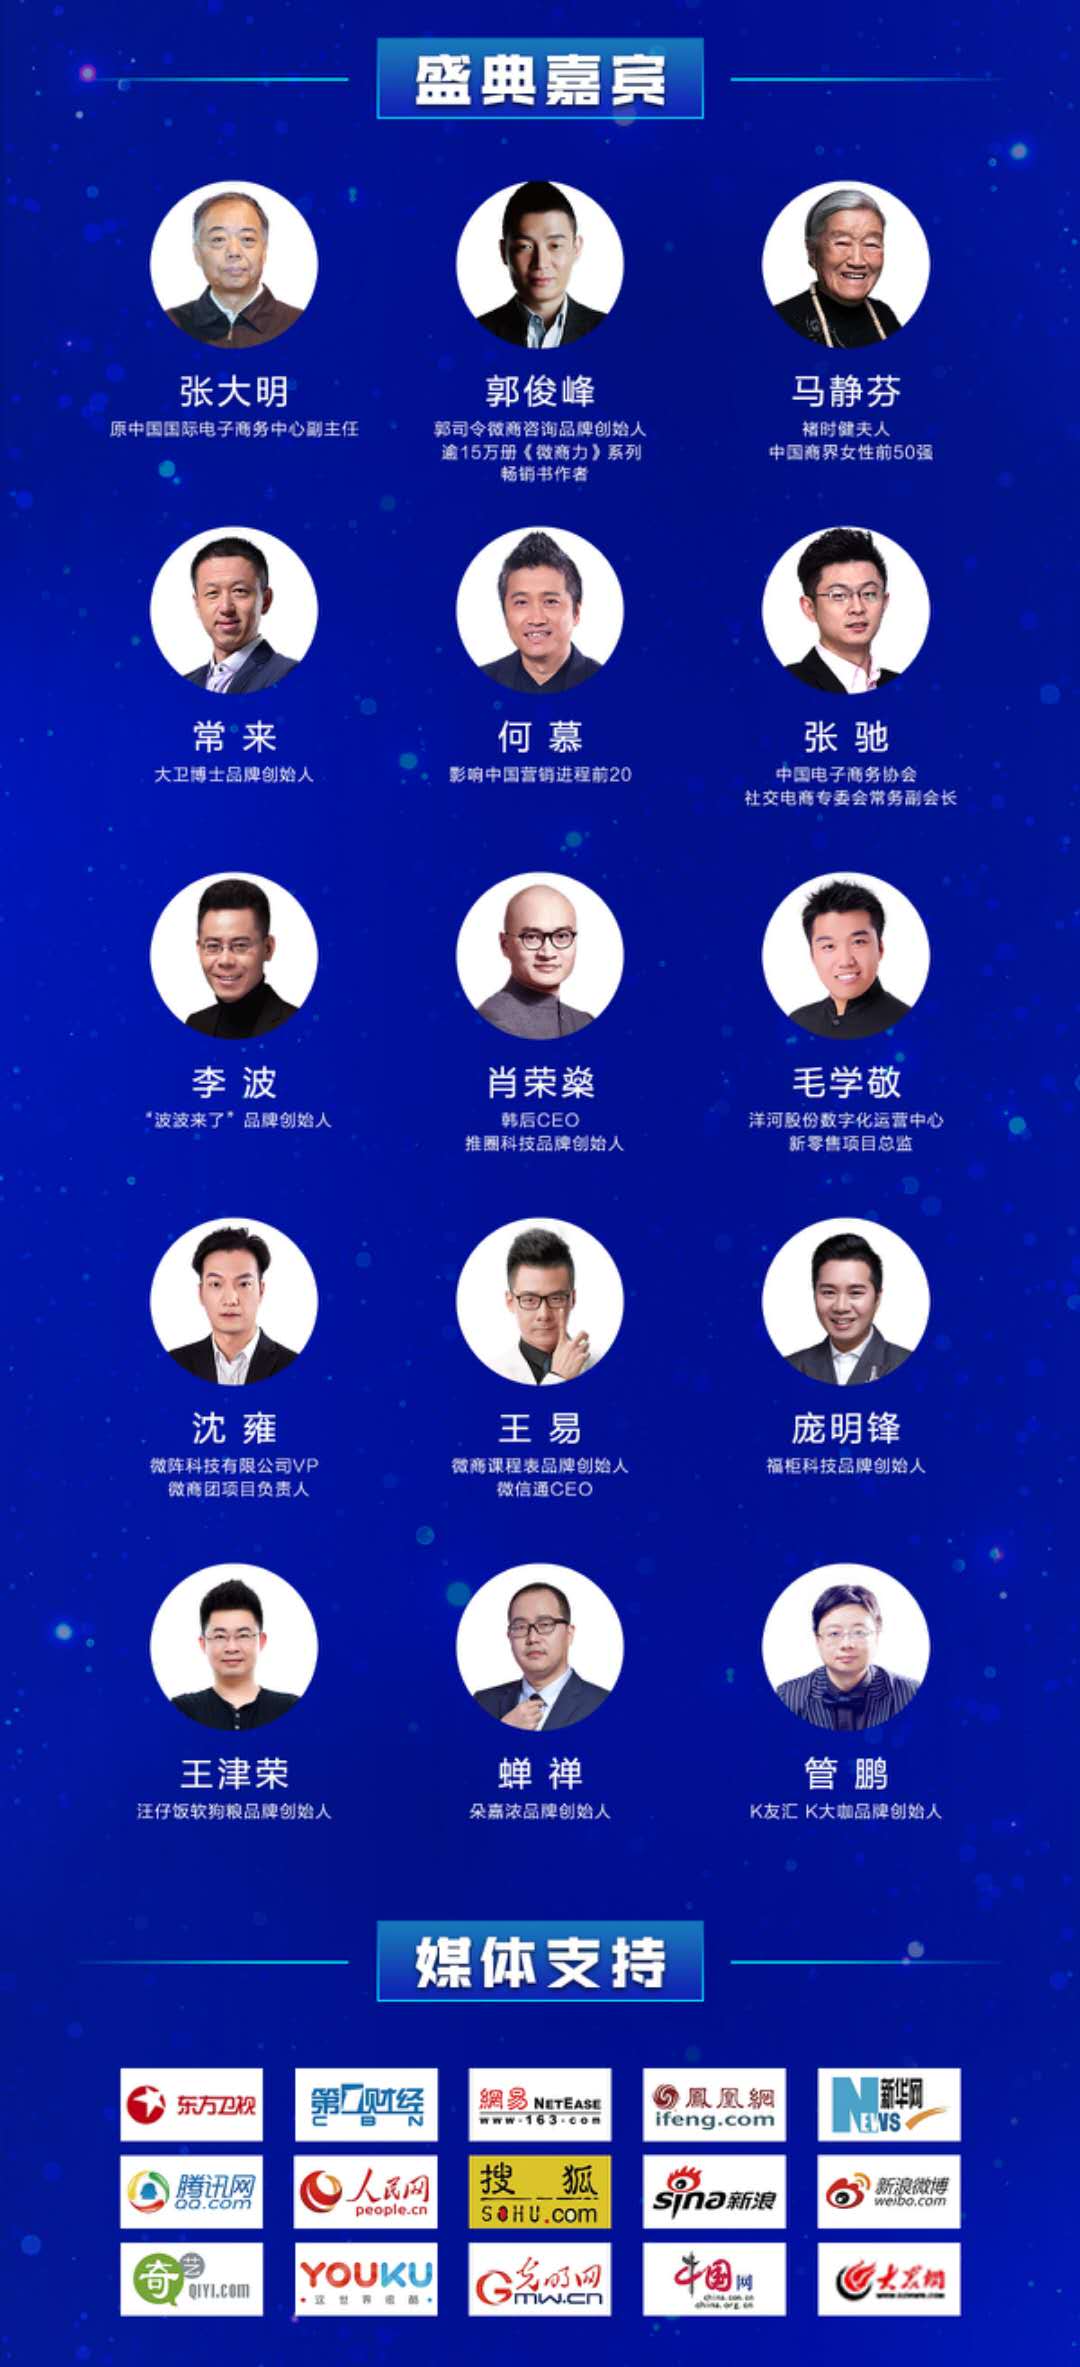 2018中国社交新零售峰会暨第五届微商年度盛典